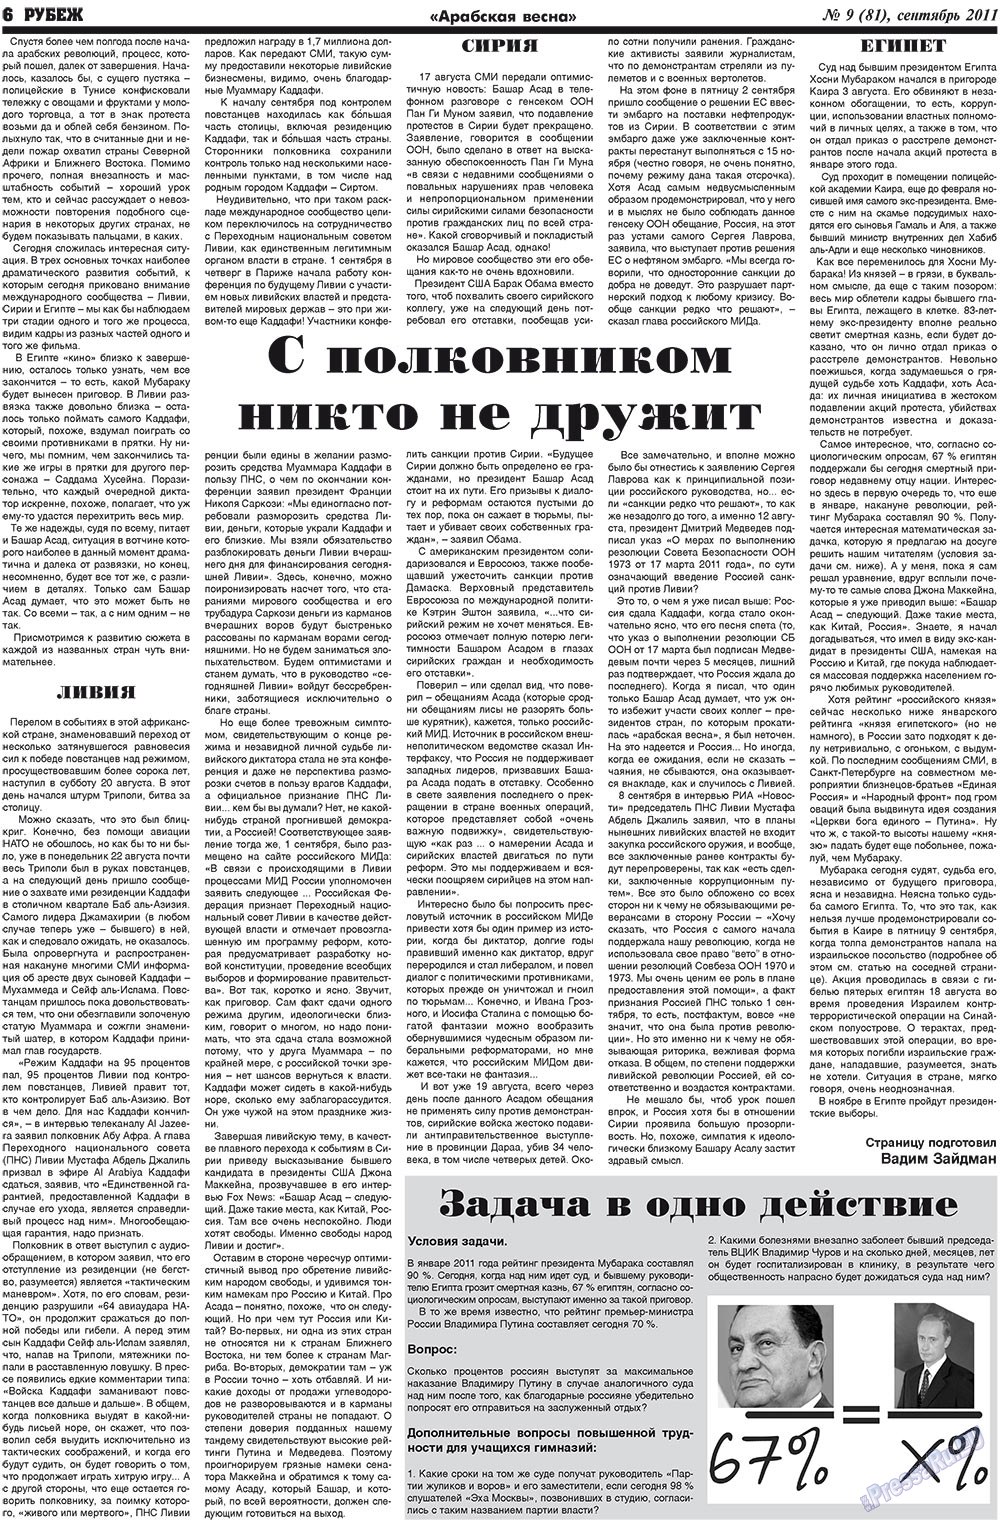 Рубеж (газета). 2011 год, номер 9, стр. 6